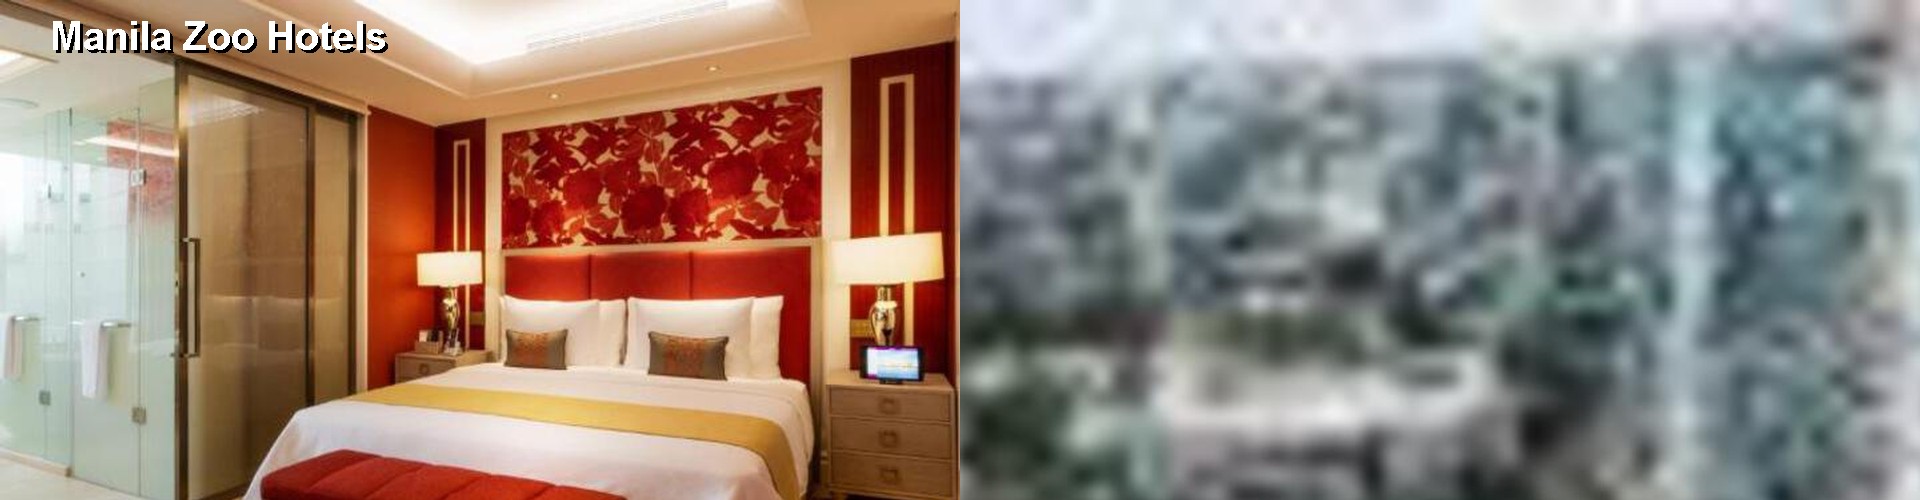 5 Best Hotels near Manila Zoo